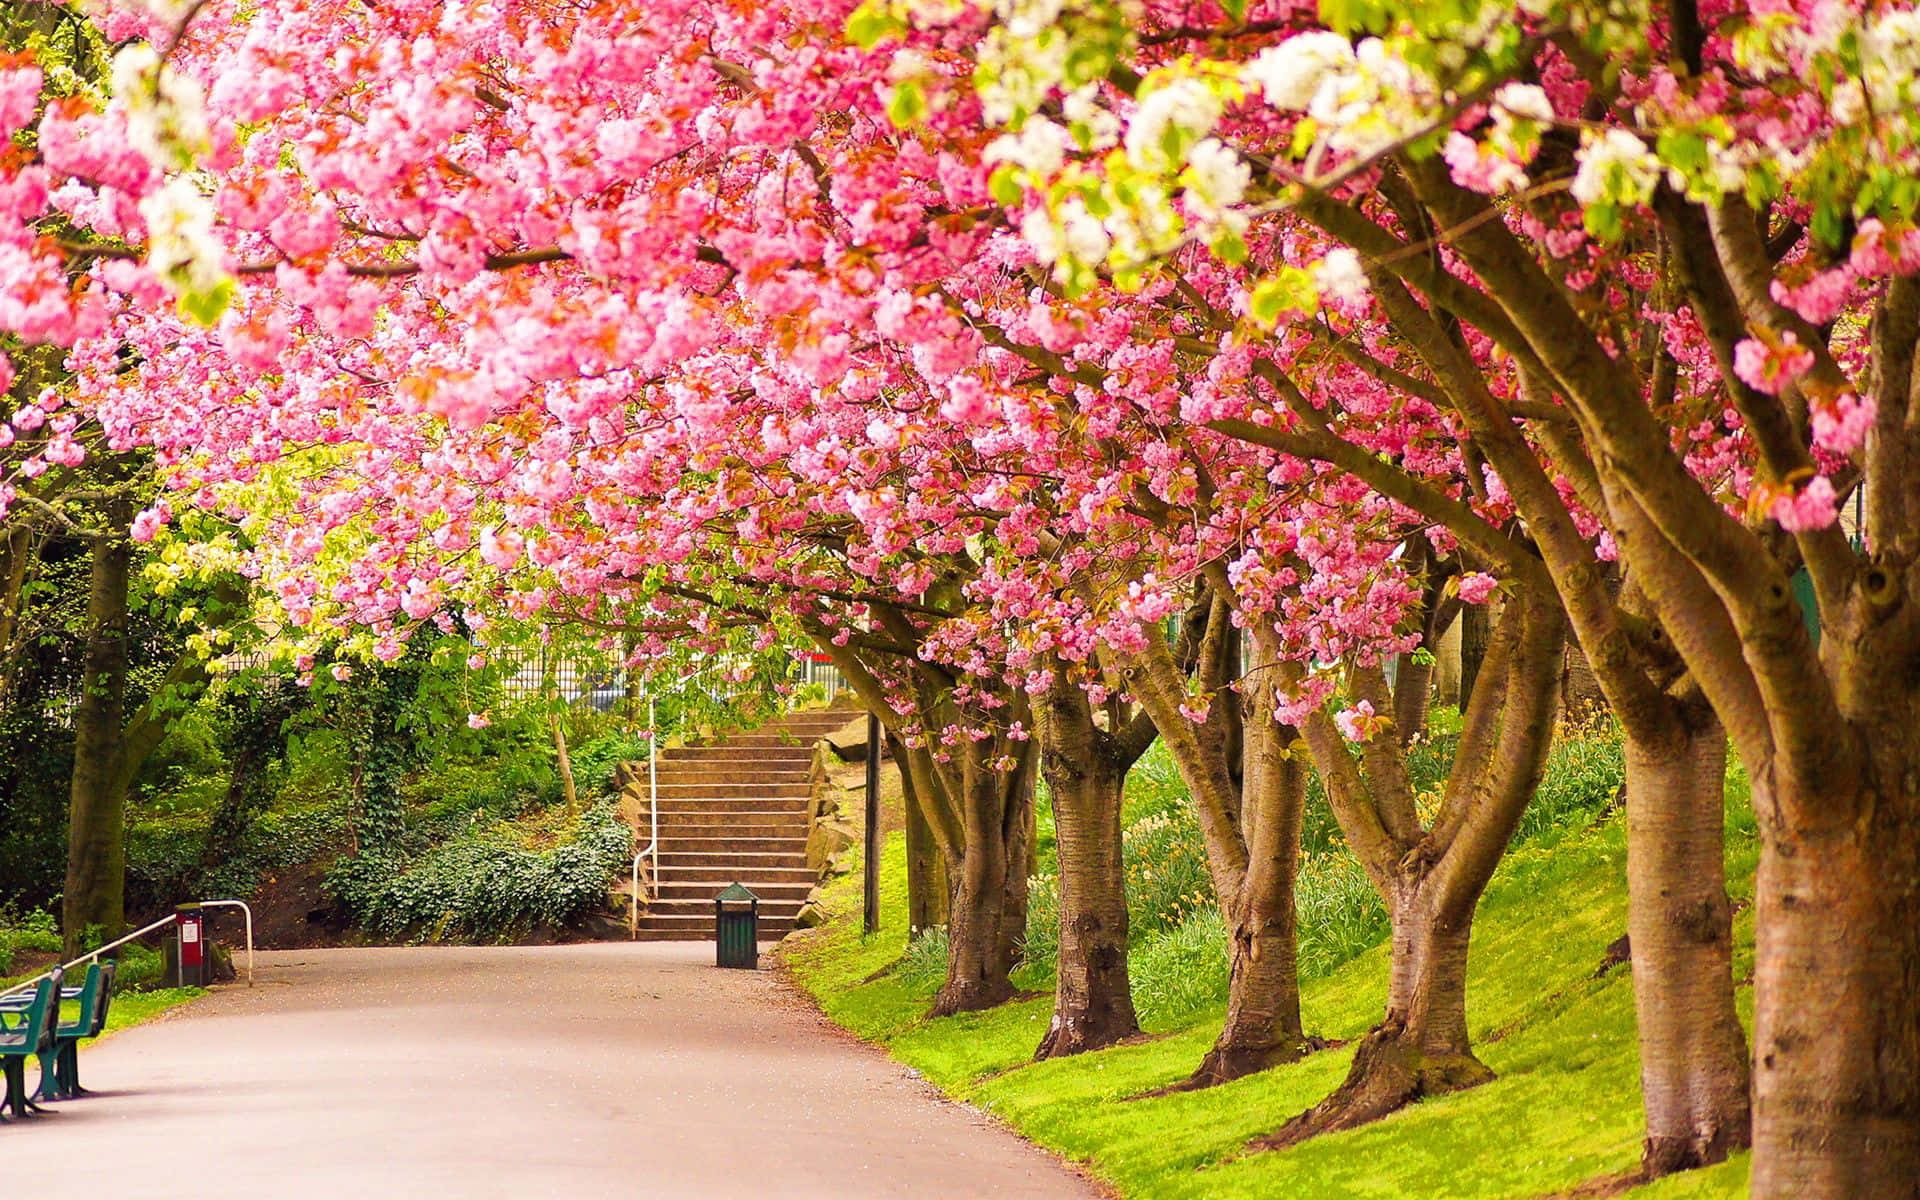 Fondode Pantalla De Árboles De Cerezo En Floración En Primavera.